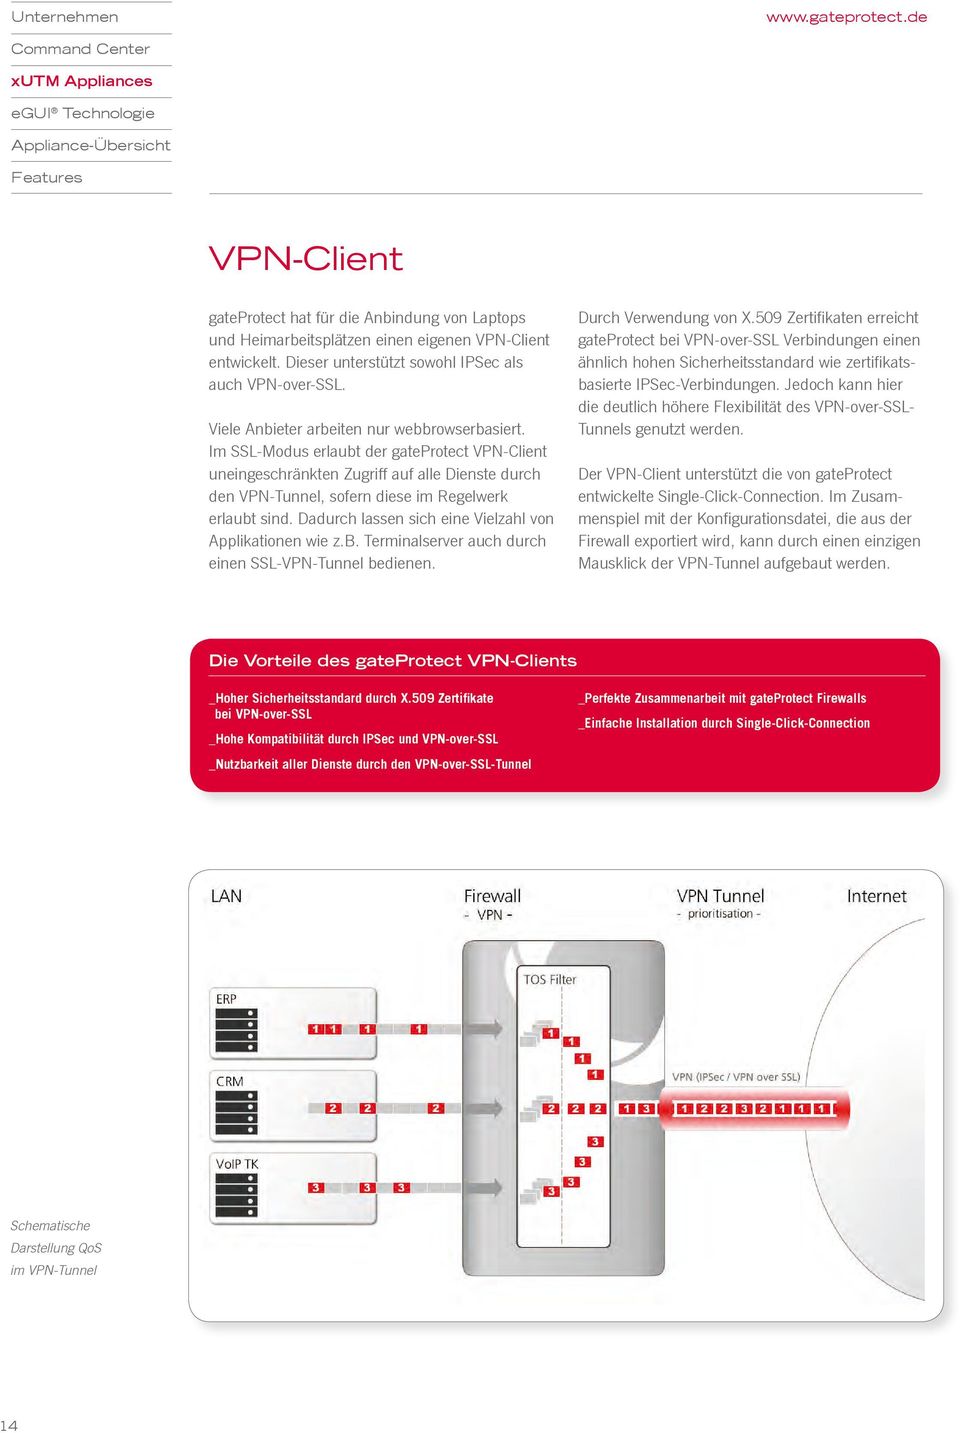 Im SSL-Modus erlaubt der gateprotect VPN-Client uneingeschränkten Zugriff auf alle Dienste durch den VPN-Tunnel, sofern diese im Regelwerk erlaubt sind.